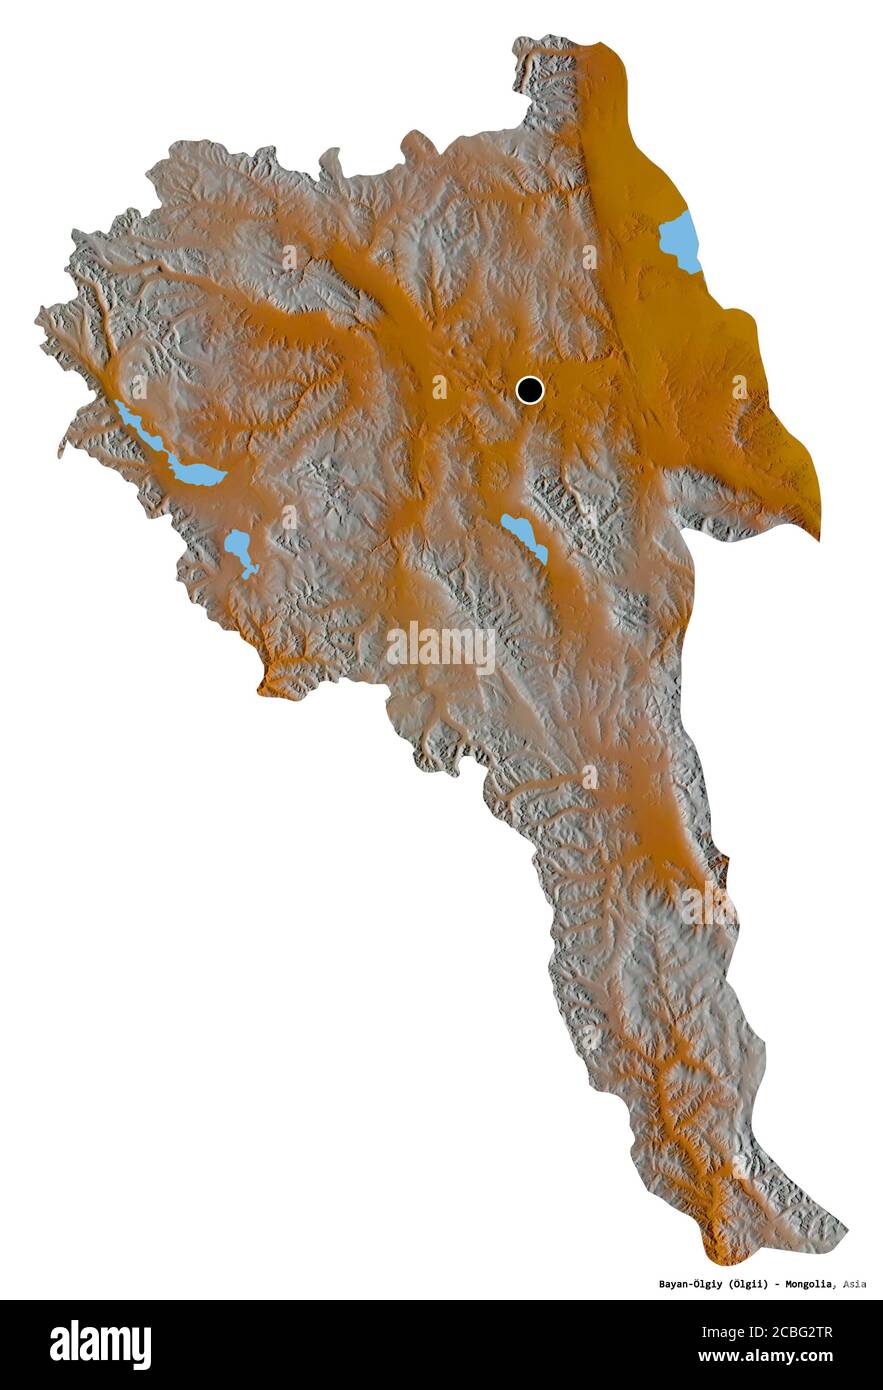 Forma di Bayan-Ölgiy, provincia della Mongolia, con la sua capitale isolata su sfondo bianco. Mappa di rilievo topografico. Rendering 3D Foto Stock